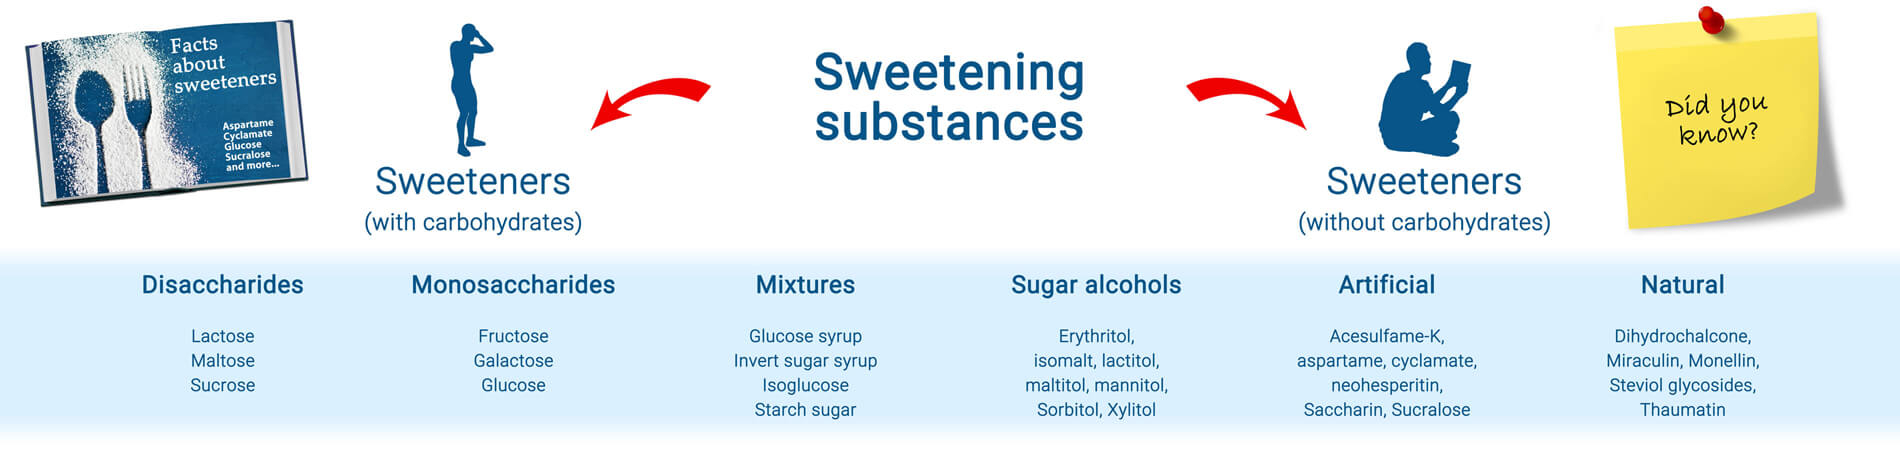 Sugar substitutes in comparison.